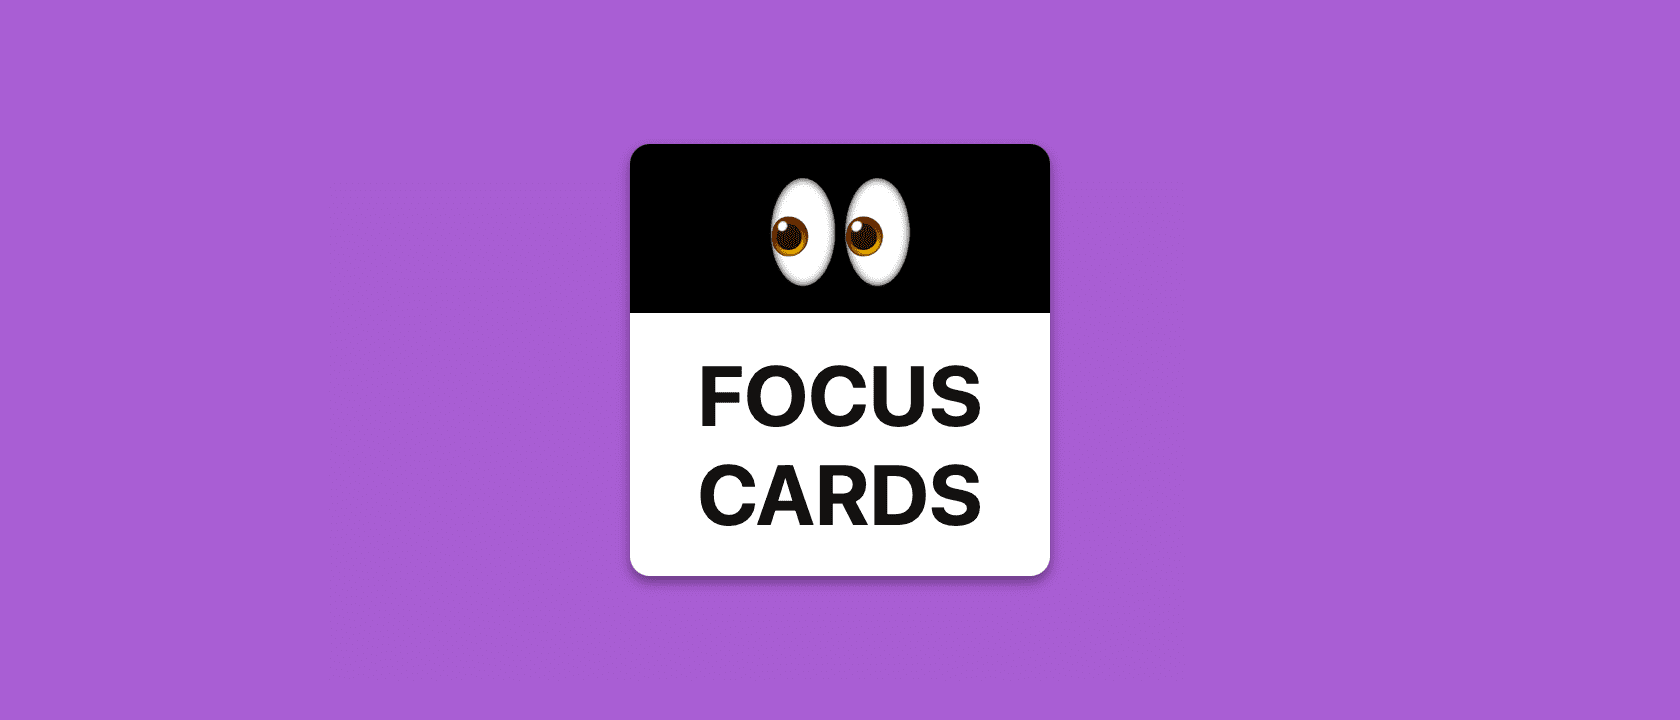 Focus Cards